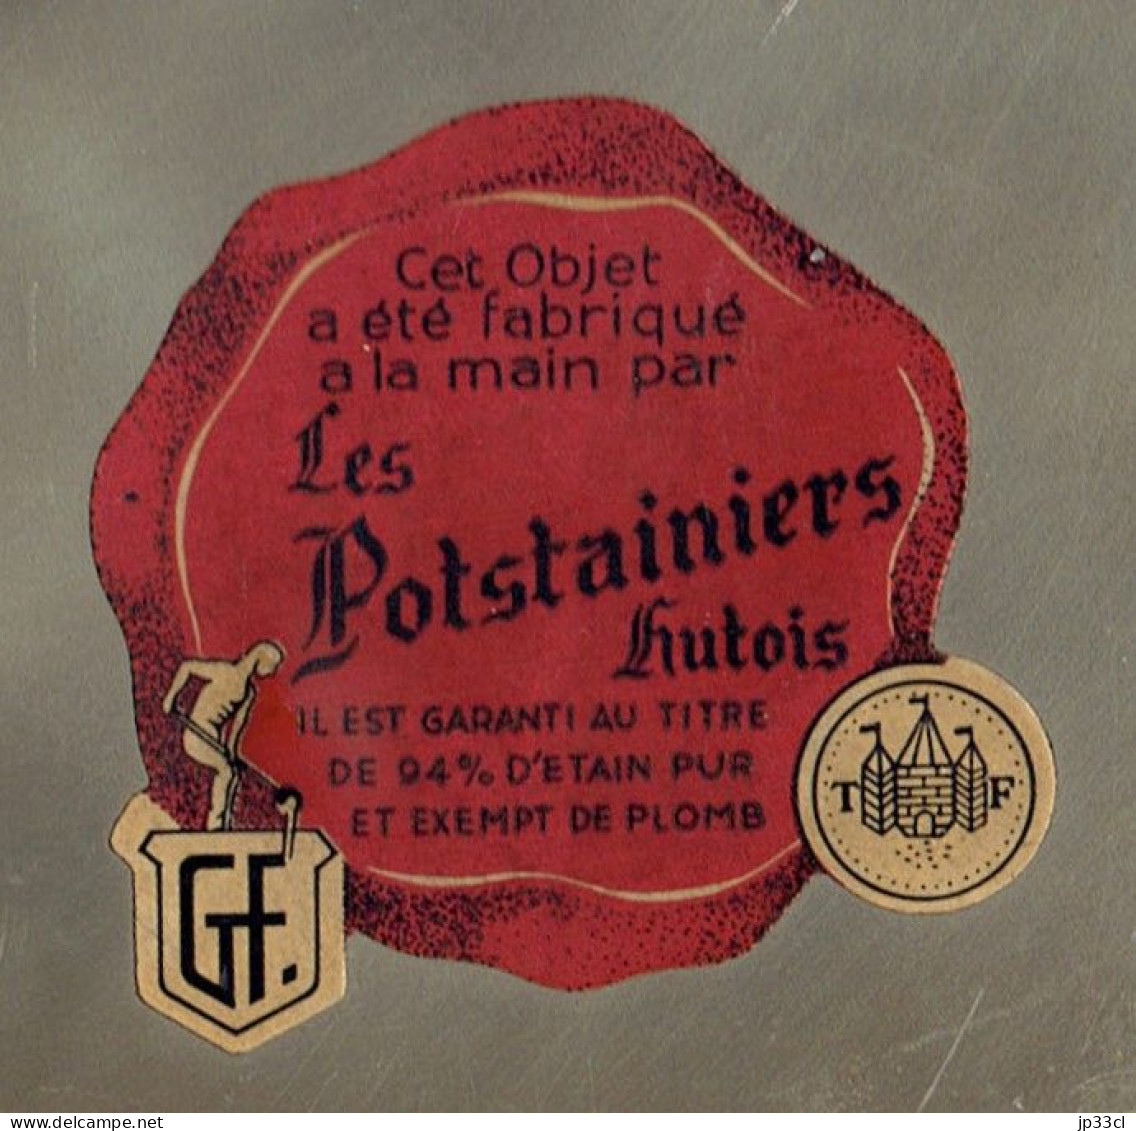 Grande Assiette En étain Des Potsstainiers Hutois (Fabriquée Main, 94% D'étain, Exempte De Plomb) - Zeitgenössische Kunst